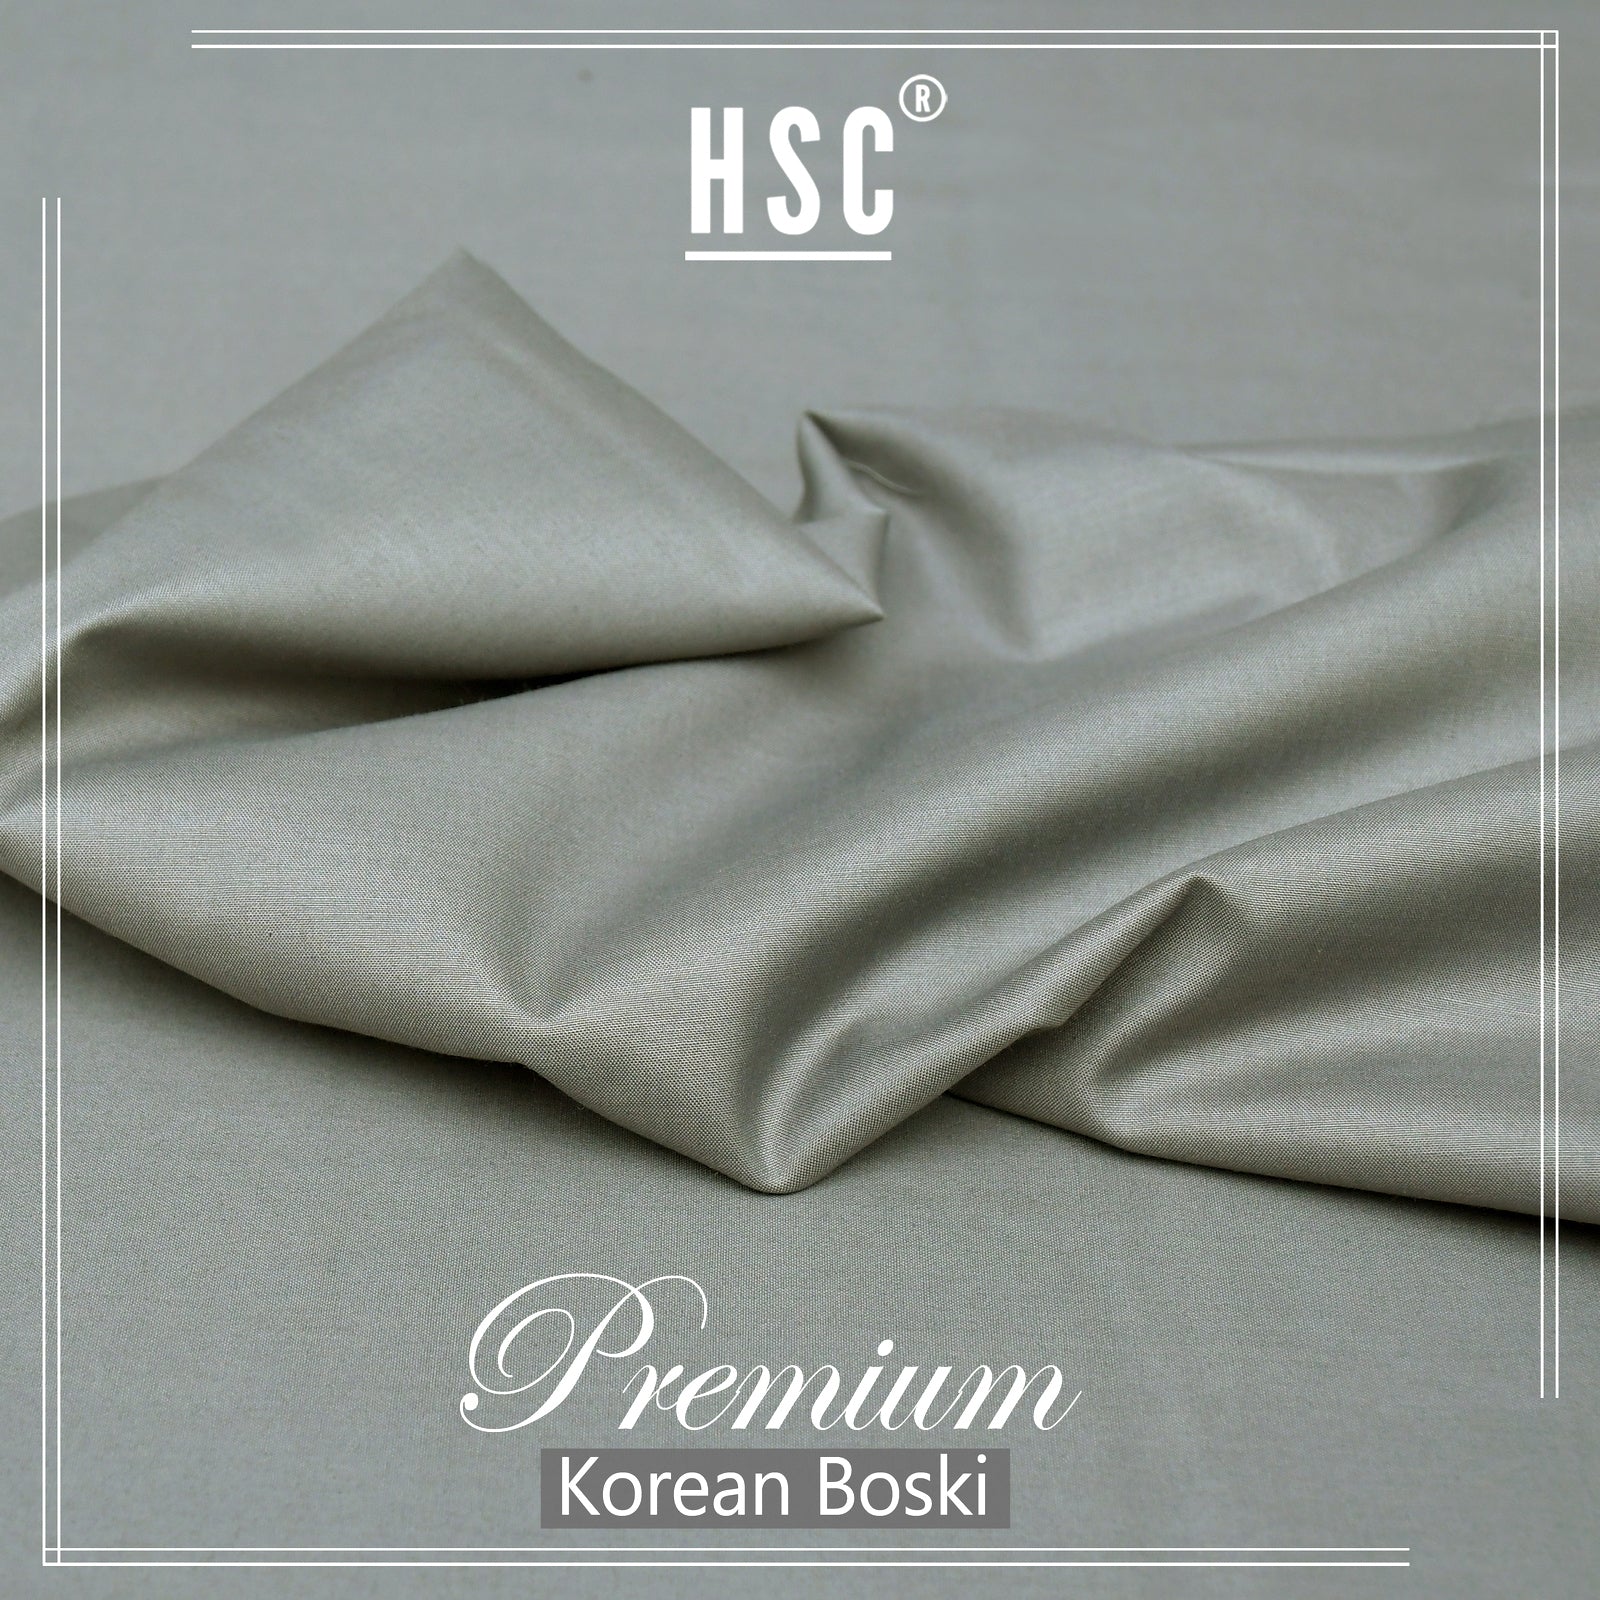 Buy1 Get 1 Free Premium Korean Boski For Men - NPKB19 HSC